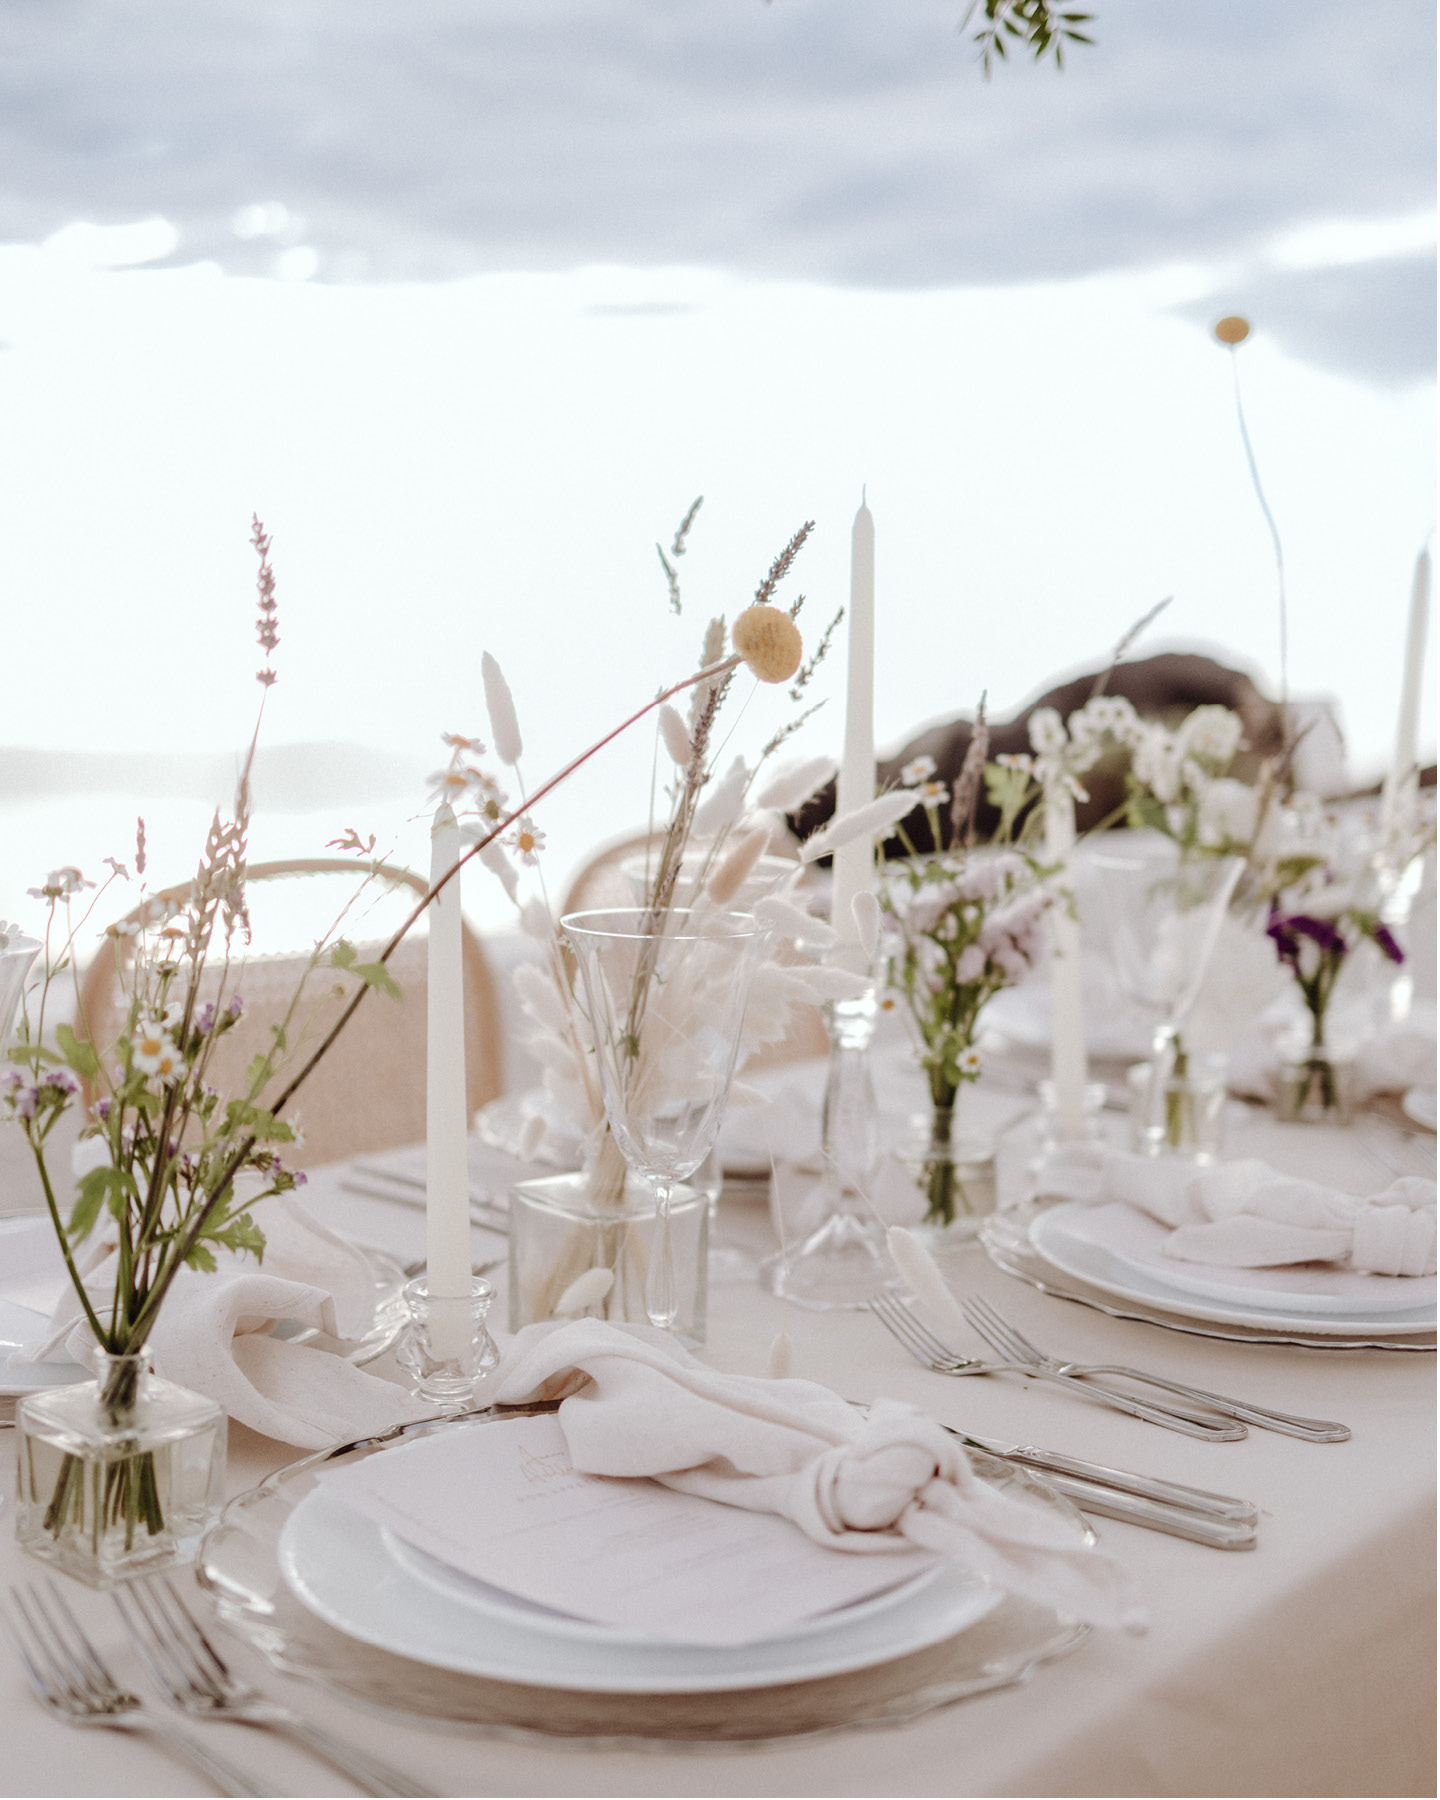 Sommerliche Tischdeko in Pastelltönen für eine Hochzeitsfeier im Freien